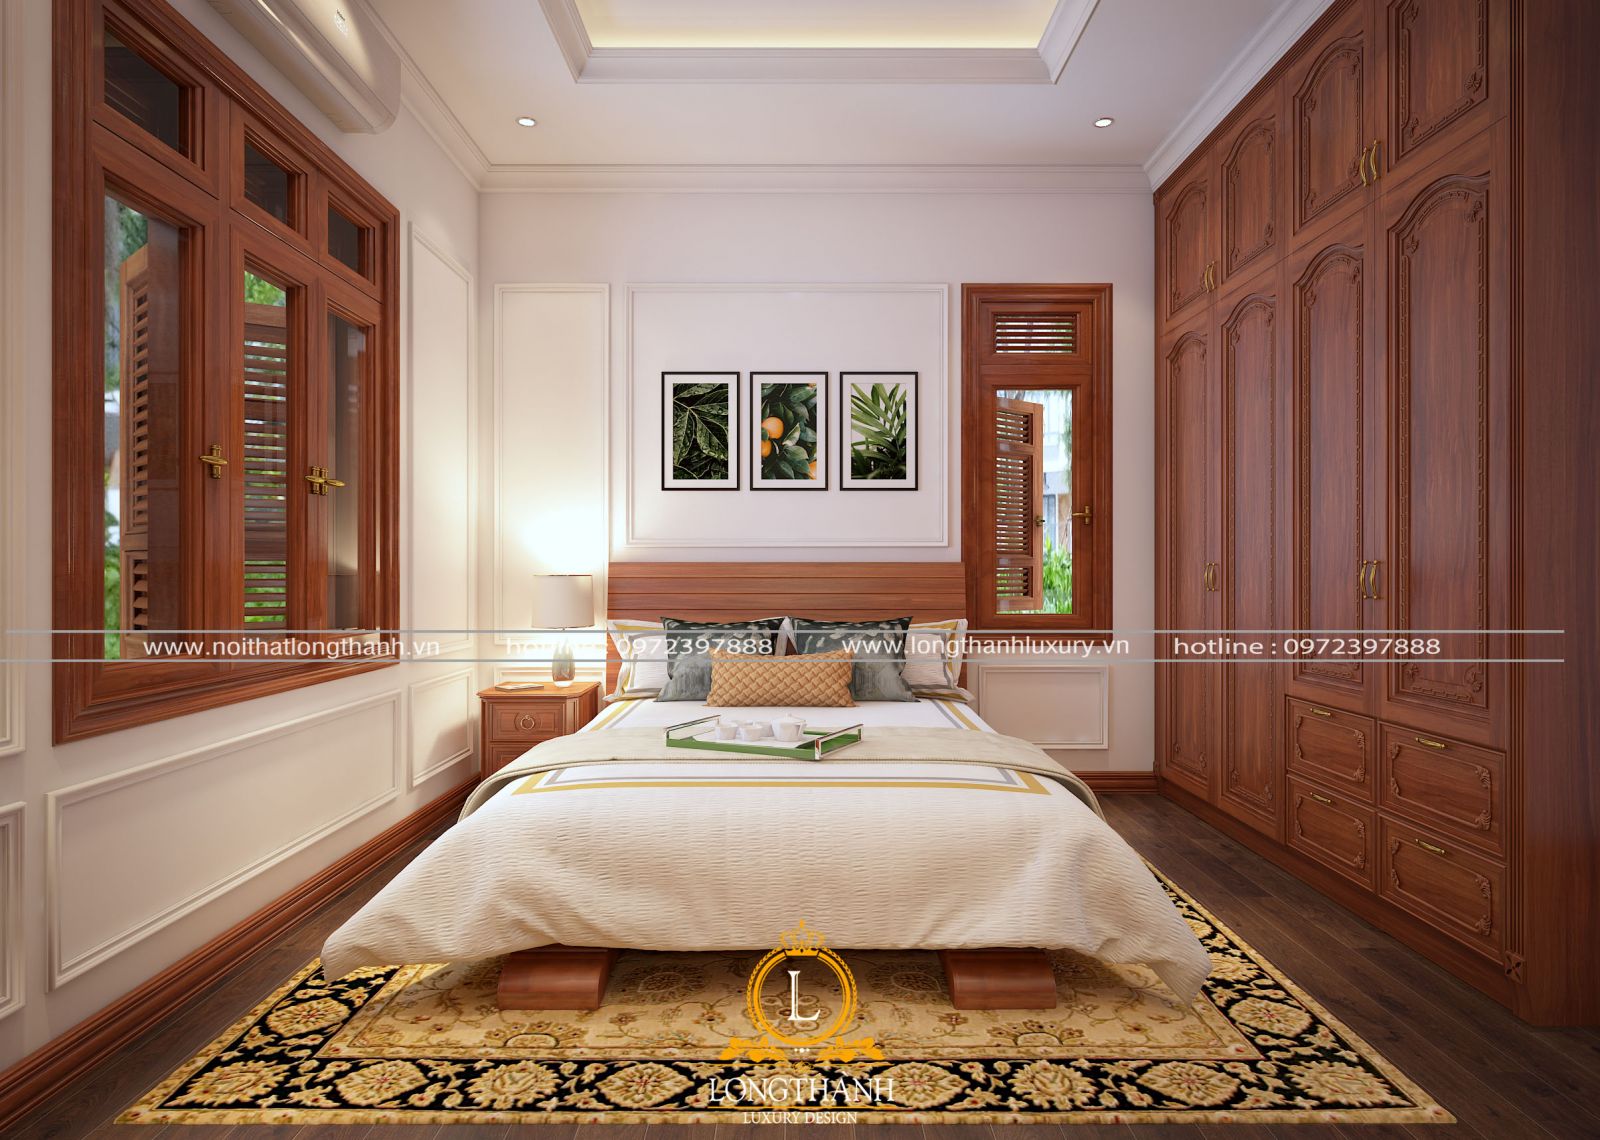 Thiết kế phòng ngủ hiện đại sử dụng chất liệu gỗ tự nhiên